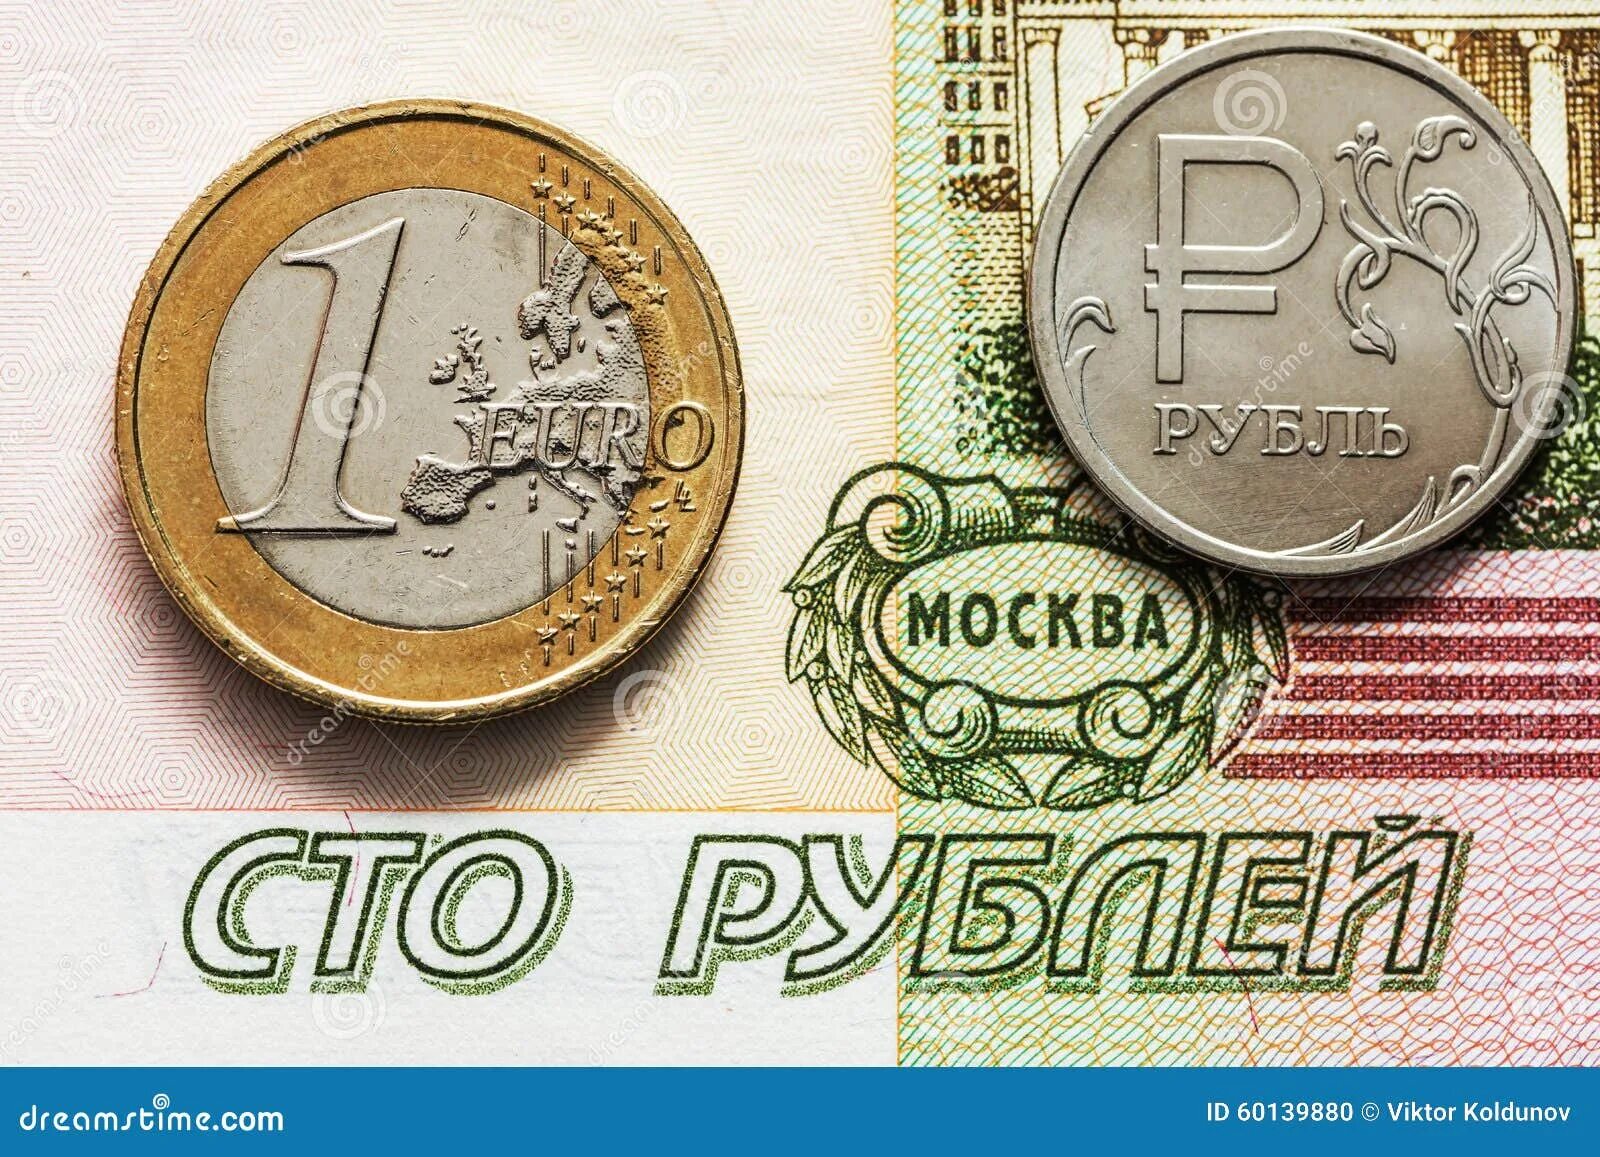 1 Евро в рублях. 100 Евро в рублях. Один евро 100 рублей. Европейская валюта в рублях.